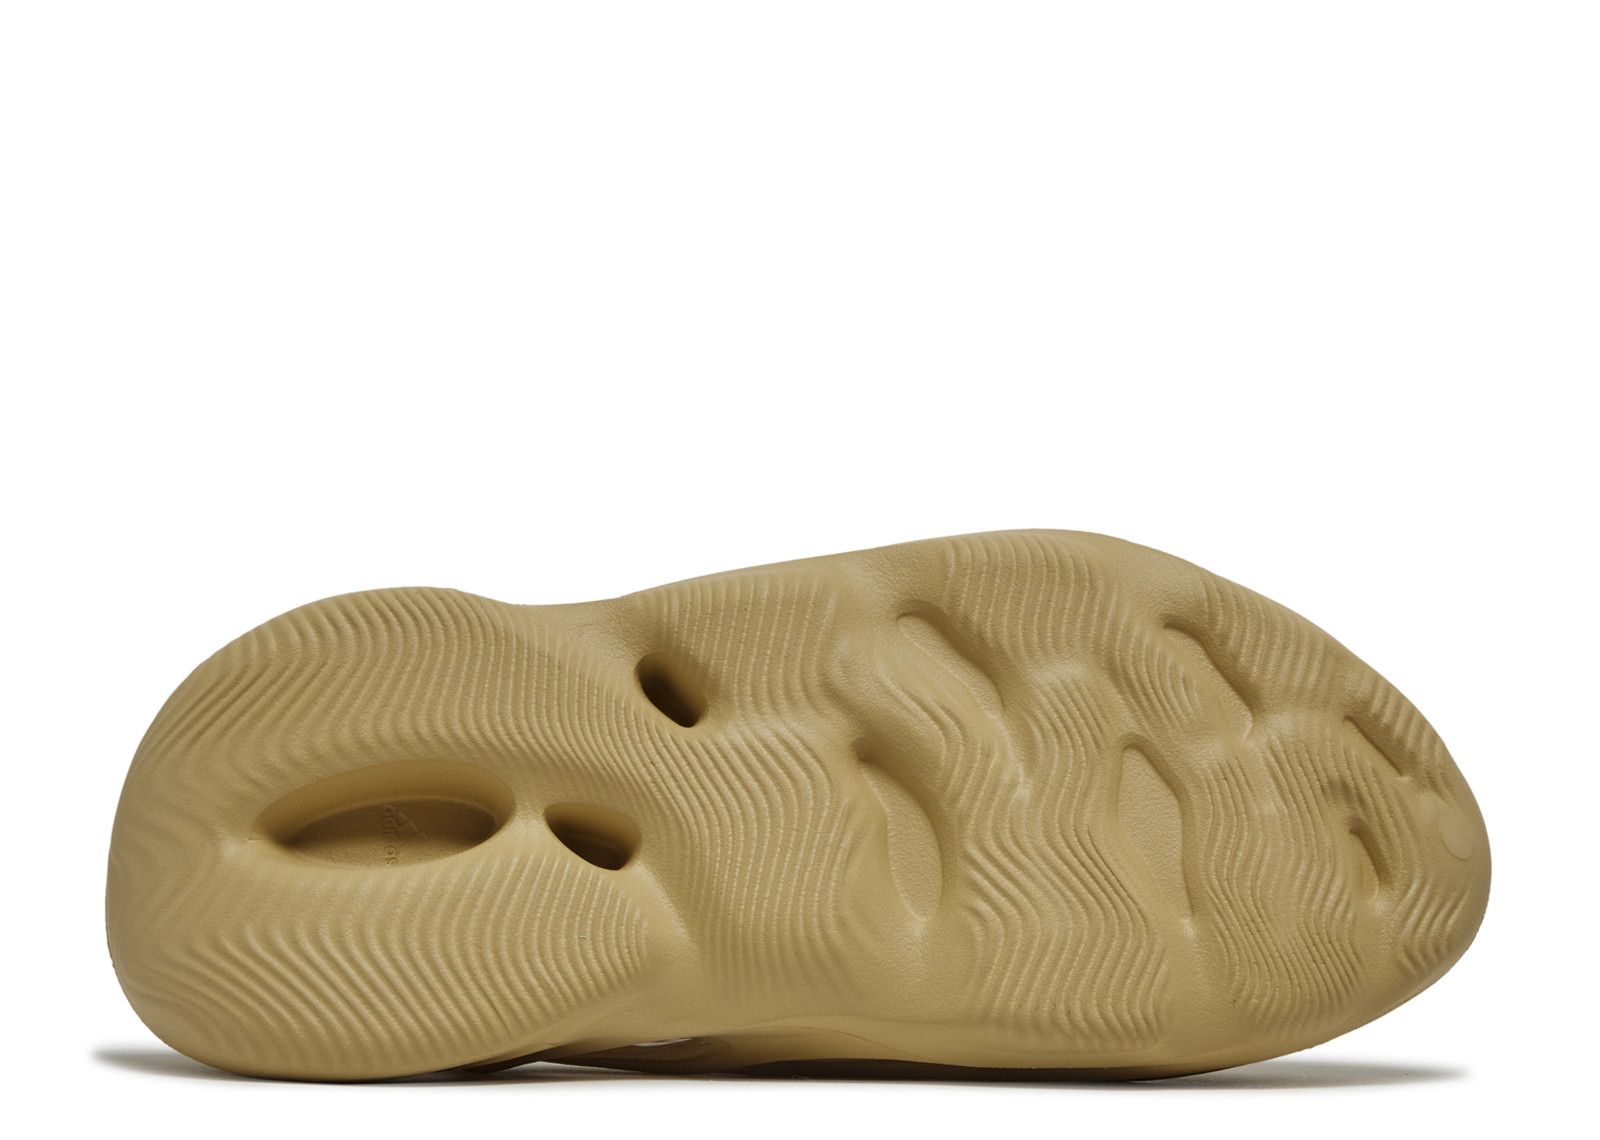 Yeezy Foam Runner 'Desert Sand' - Adidas - GV6843 - desert sand/desert ...